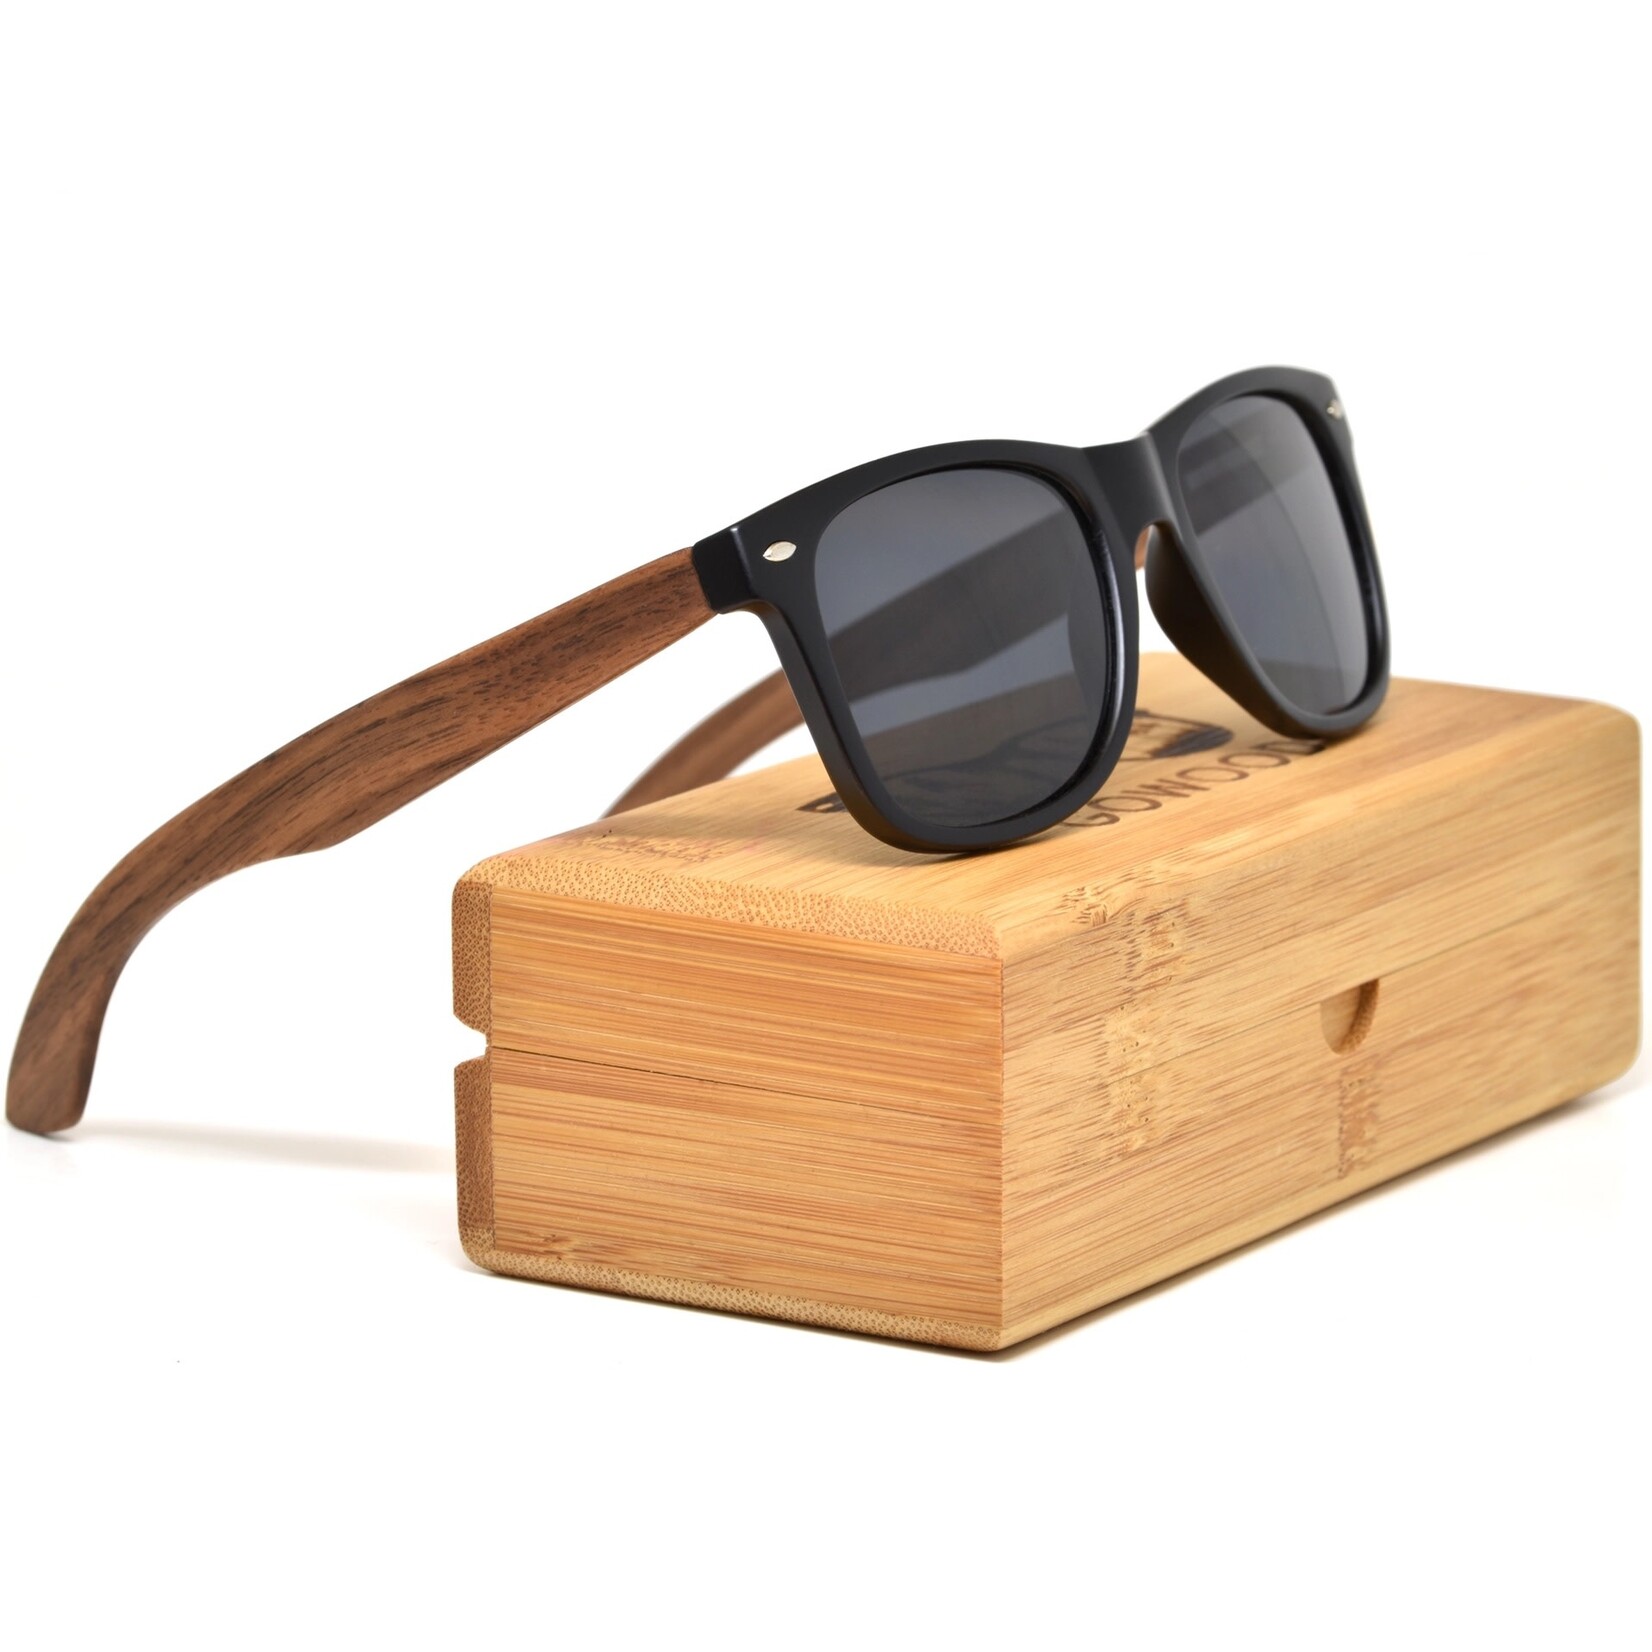 Go Wood Walnut Wood Sunglasses - Black Polarized Lenses